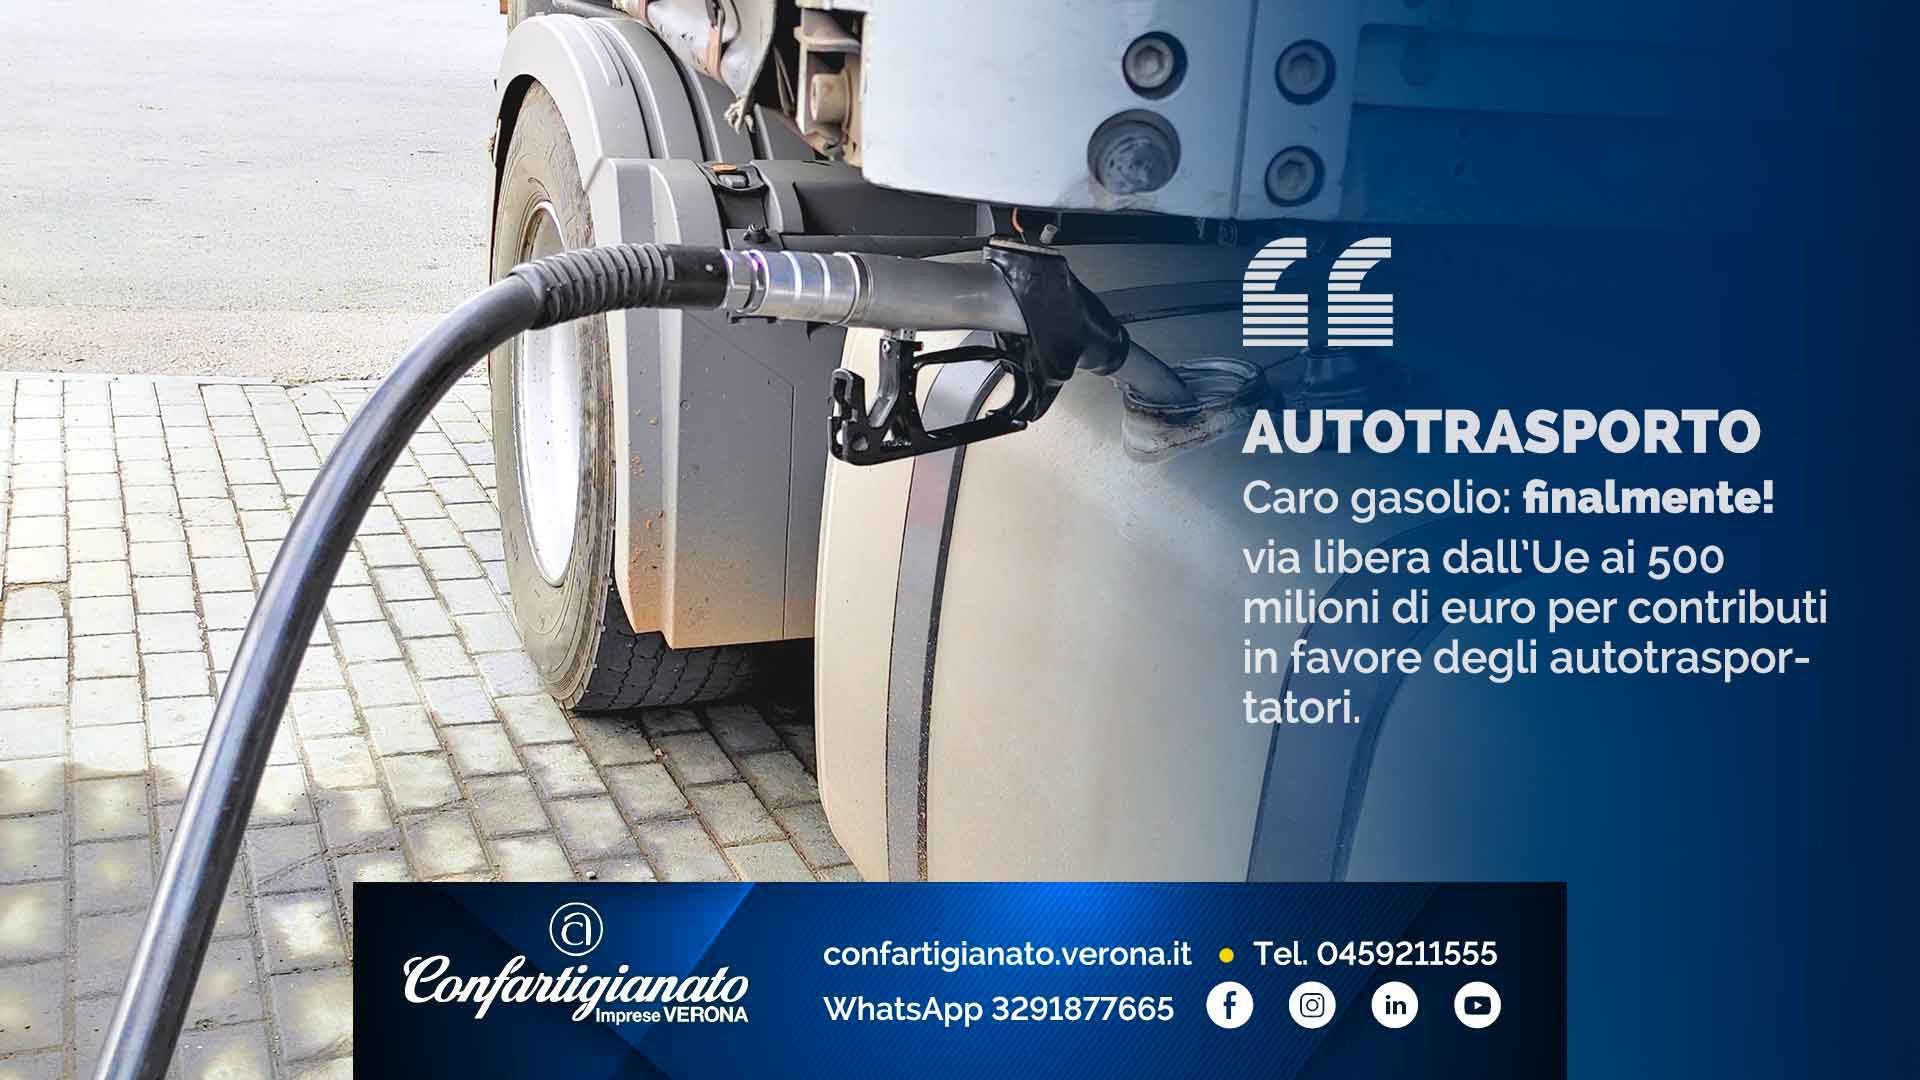 AUTOTRASPORTO – Caro gasolio: via libera dall’Ue ai 500 milioni di euro per contributi in favore degli autotrasportatori